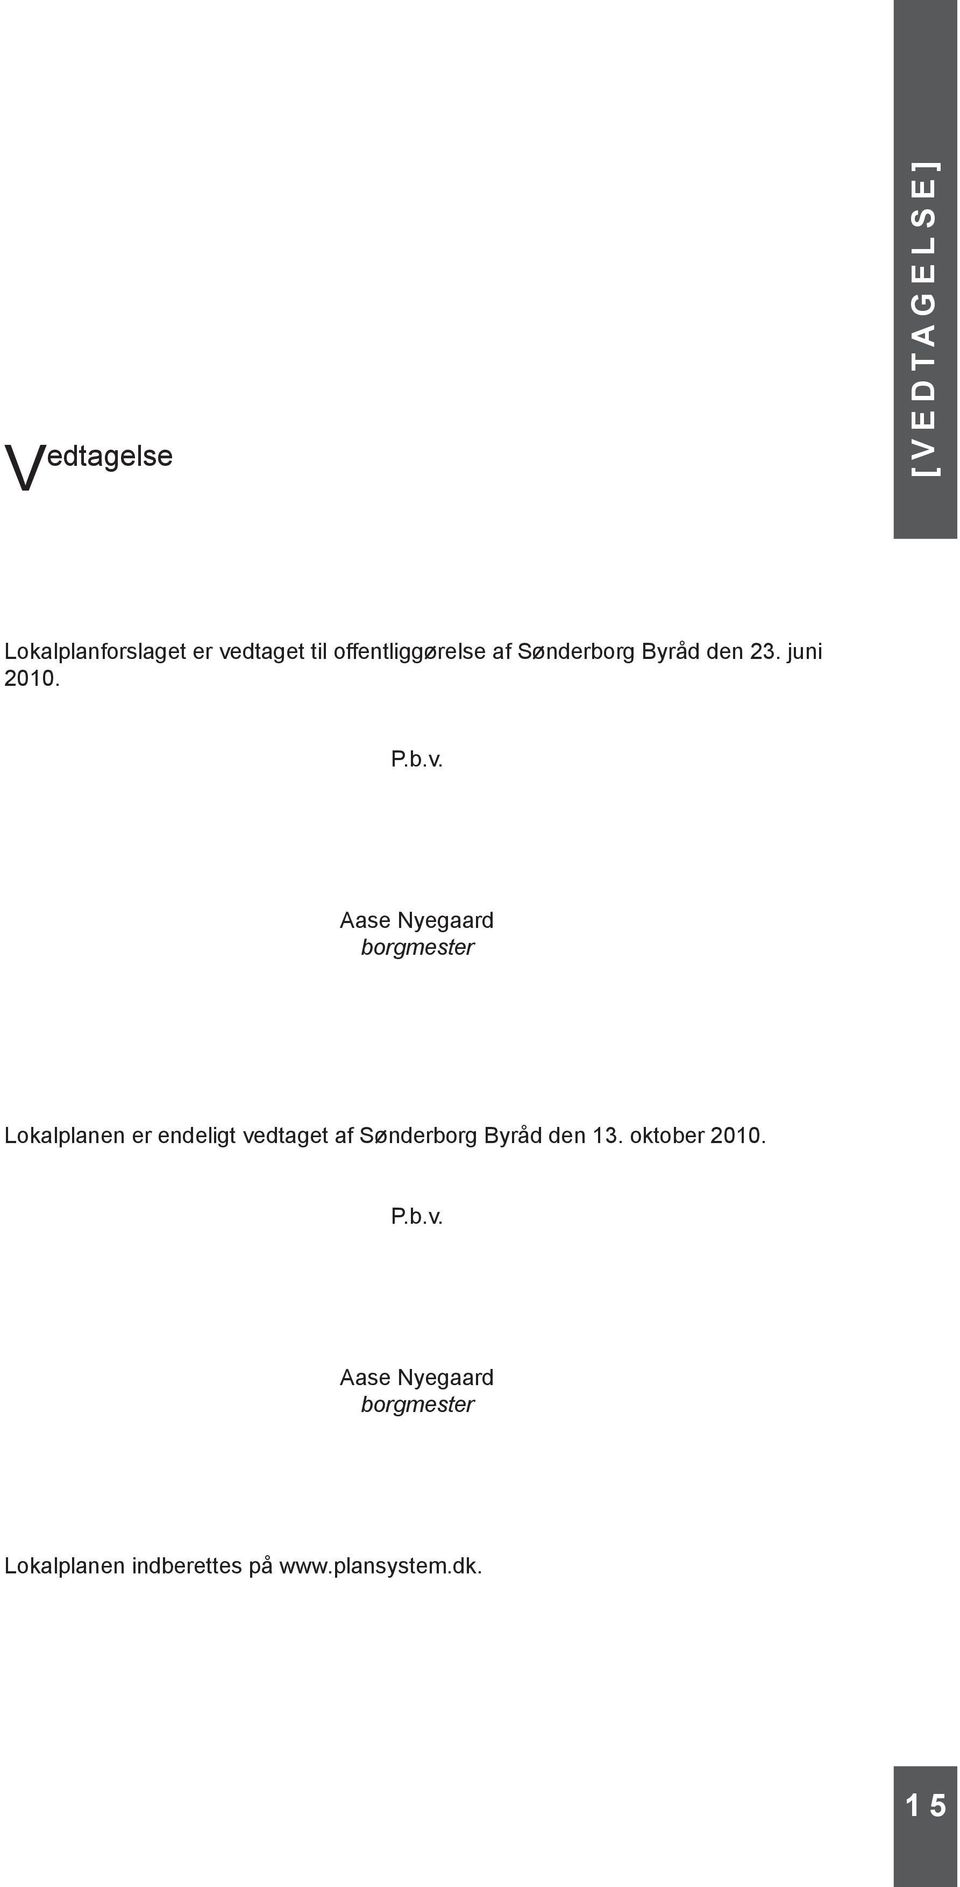 Aase Nyegaard borgmester Lokalplanen er endeligt vedtaget af Sønderborg Byråd